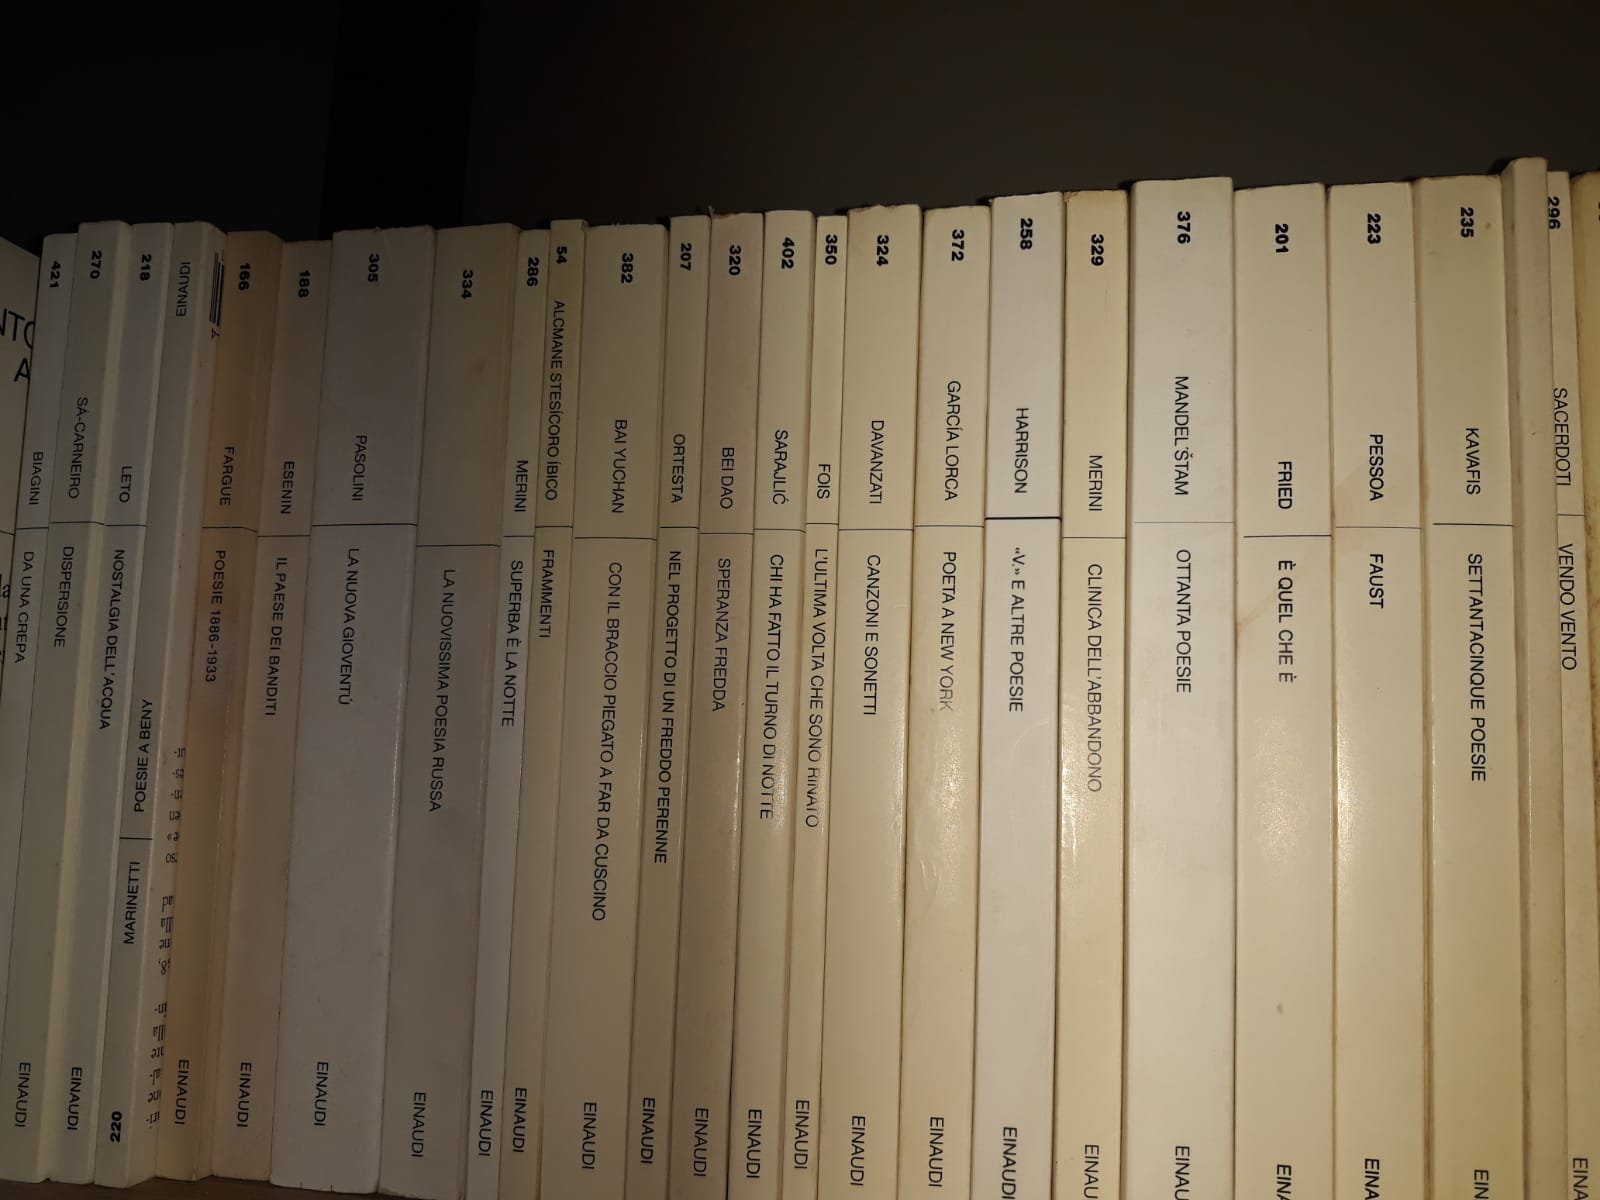 Alcuni libri della collana Bianca di Einaudi, foto Poeti.org